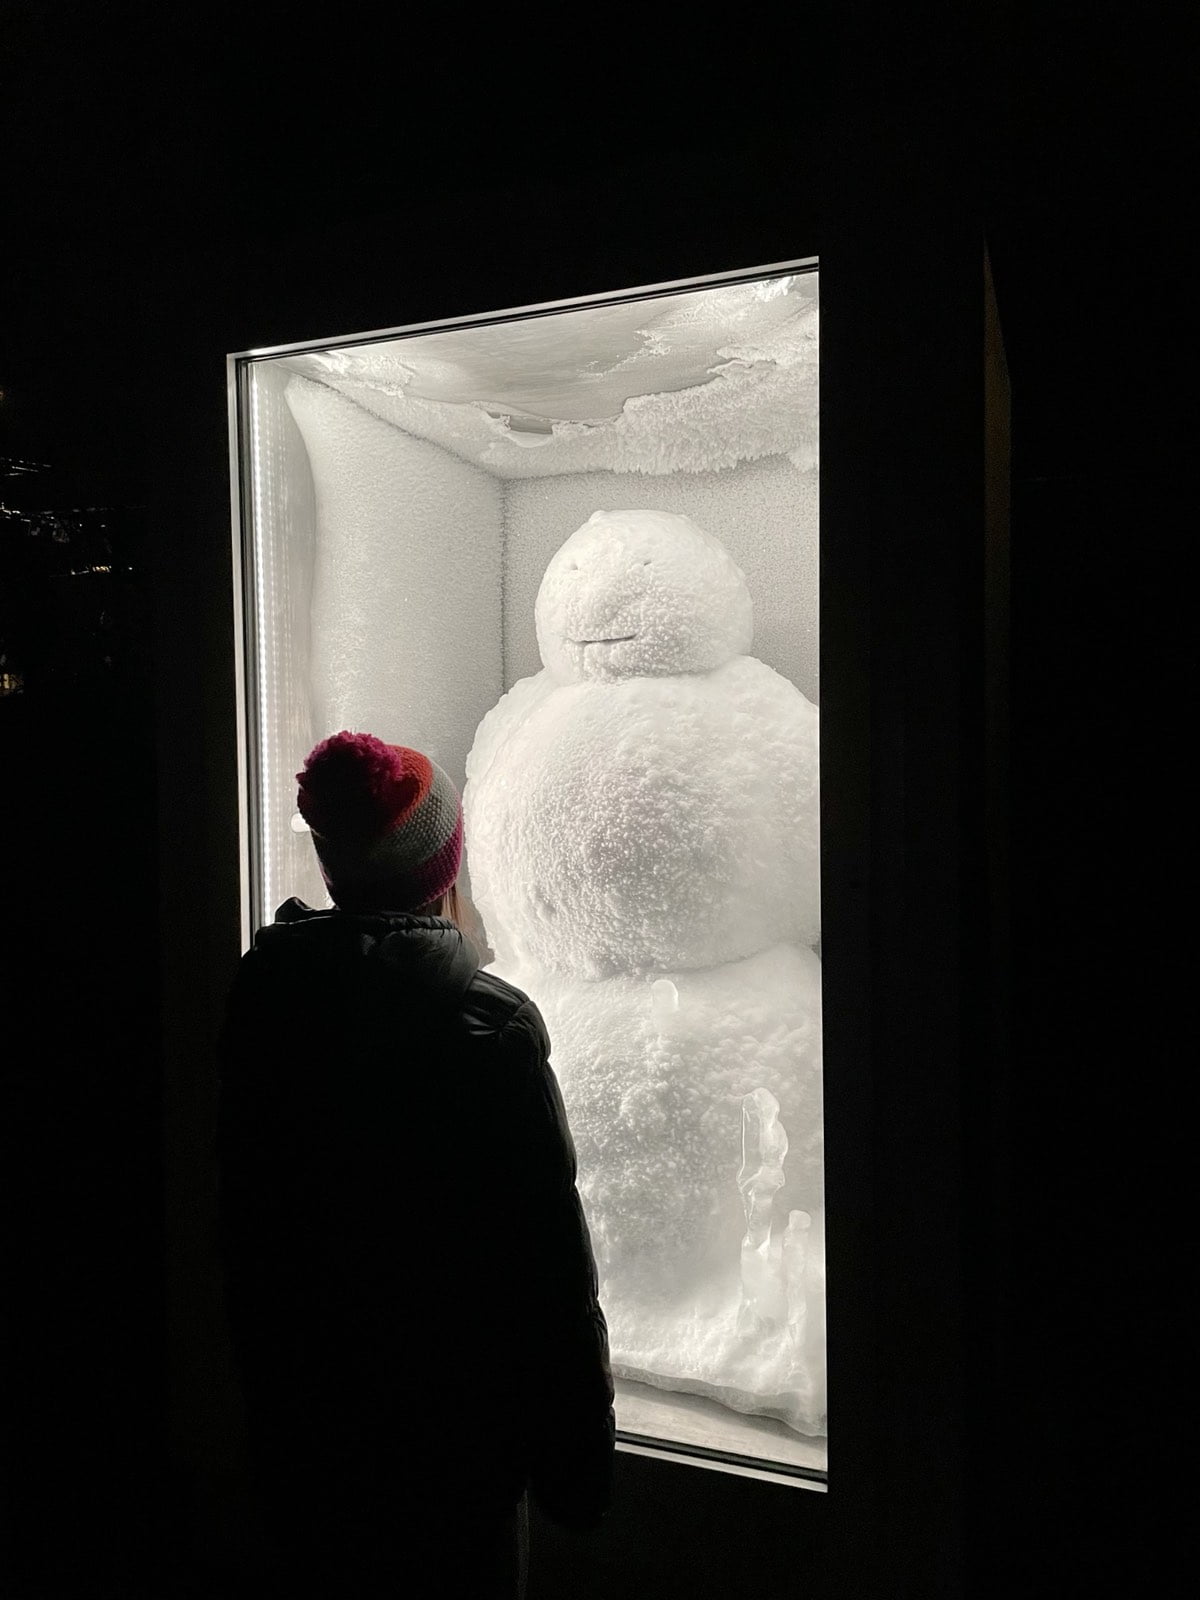 dziecko oglądające rzeźbę snowman w bazylei